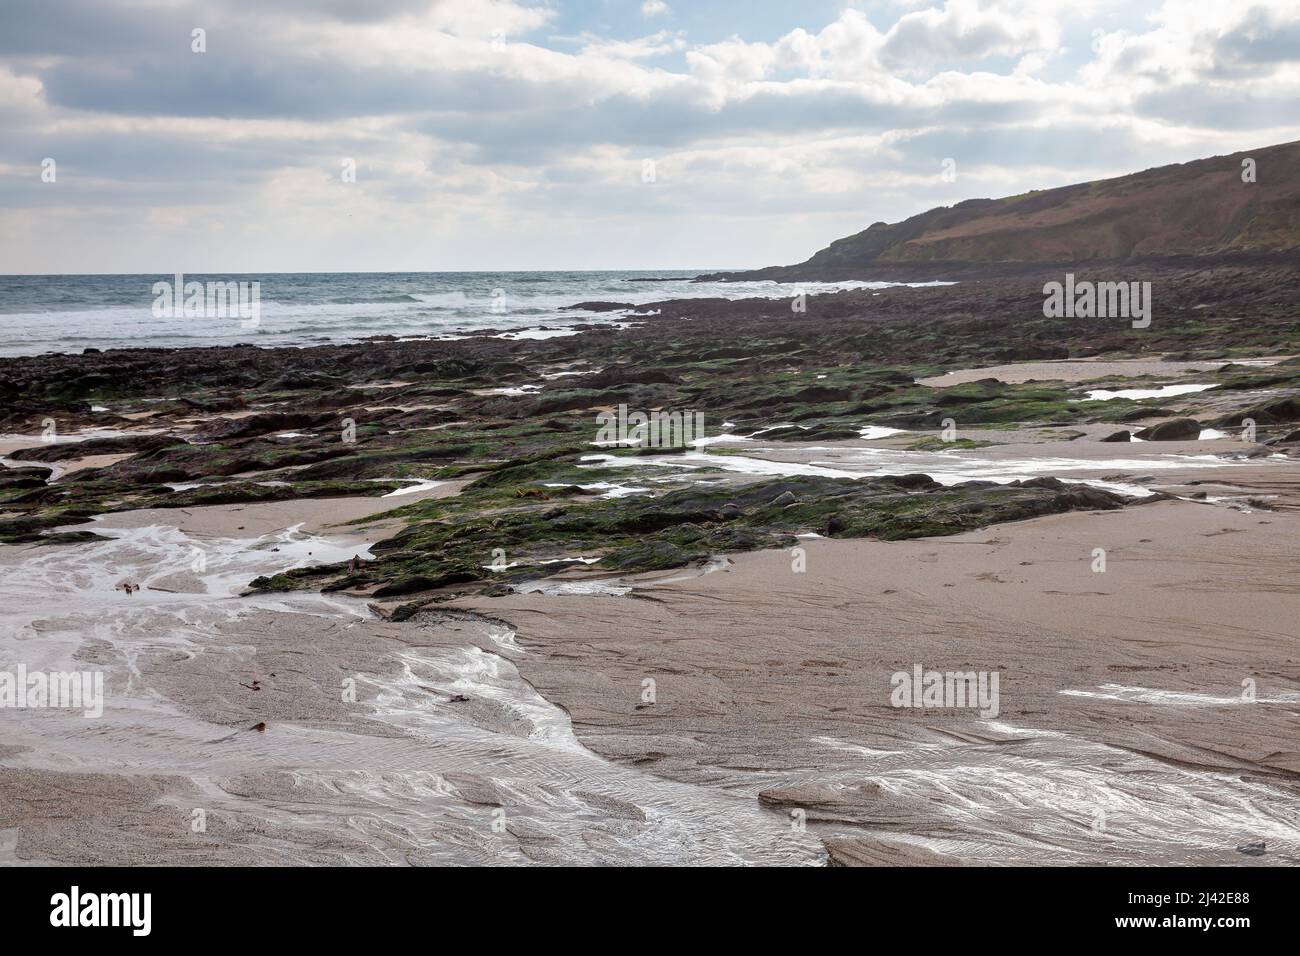 Belle plage de Towan près de Portscatho sur la péninsule de Roseland Cornwall Angleterre Royaume-Uni Banque D'Images